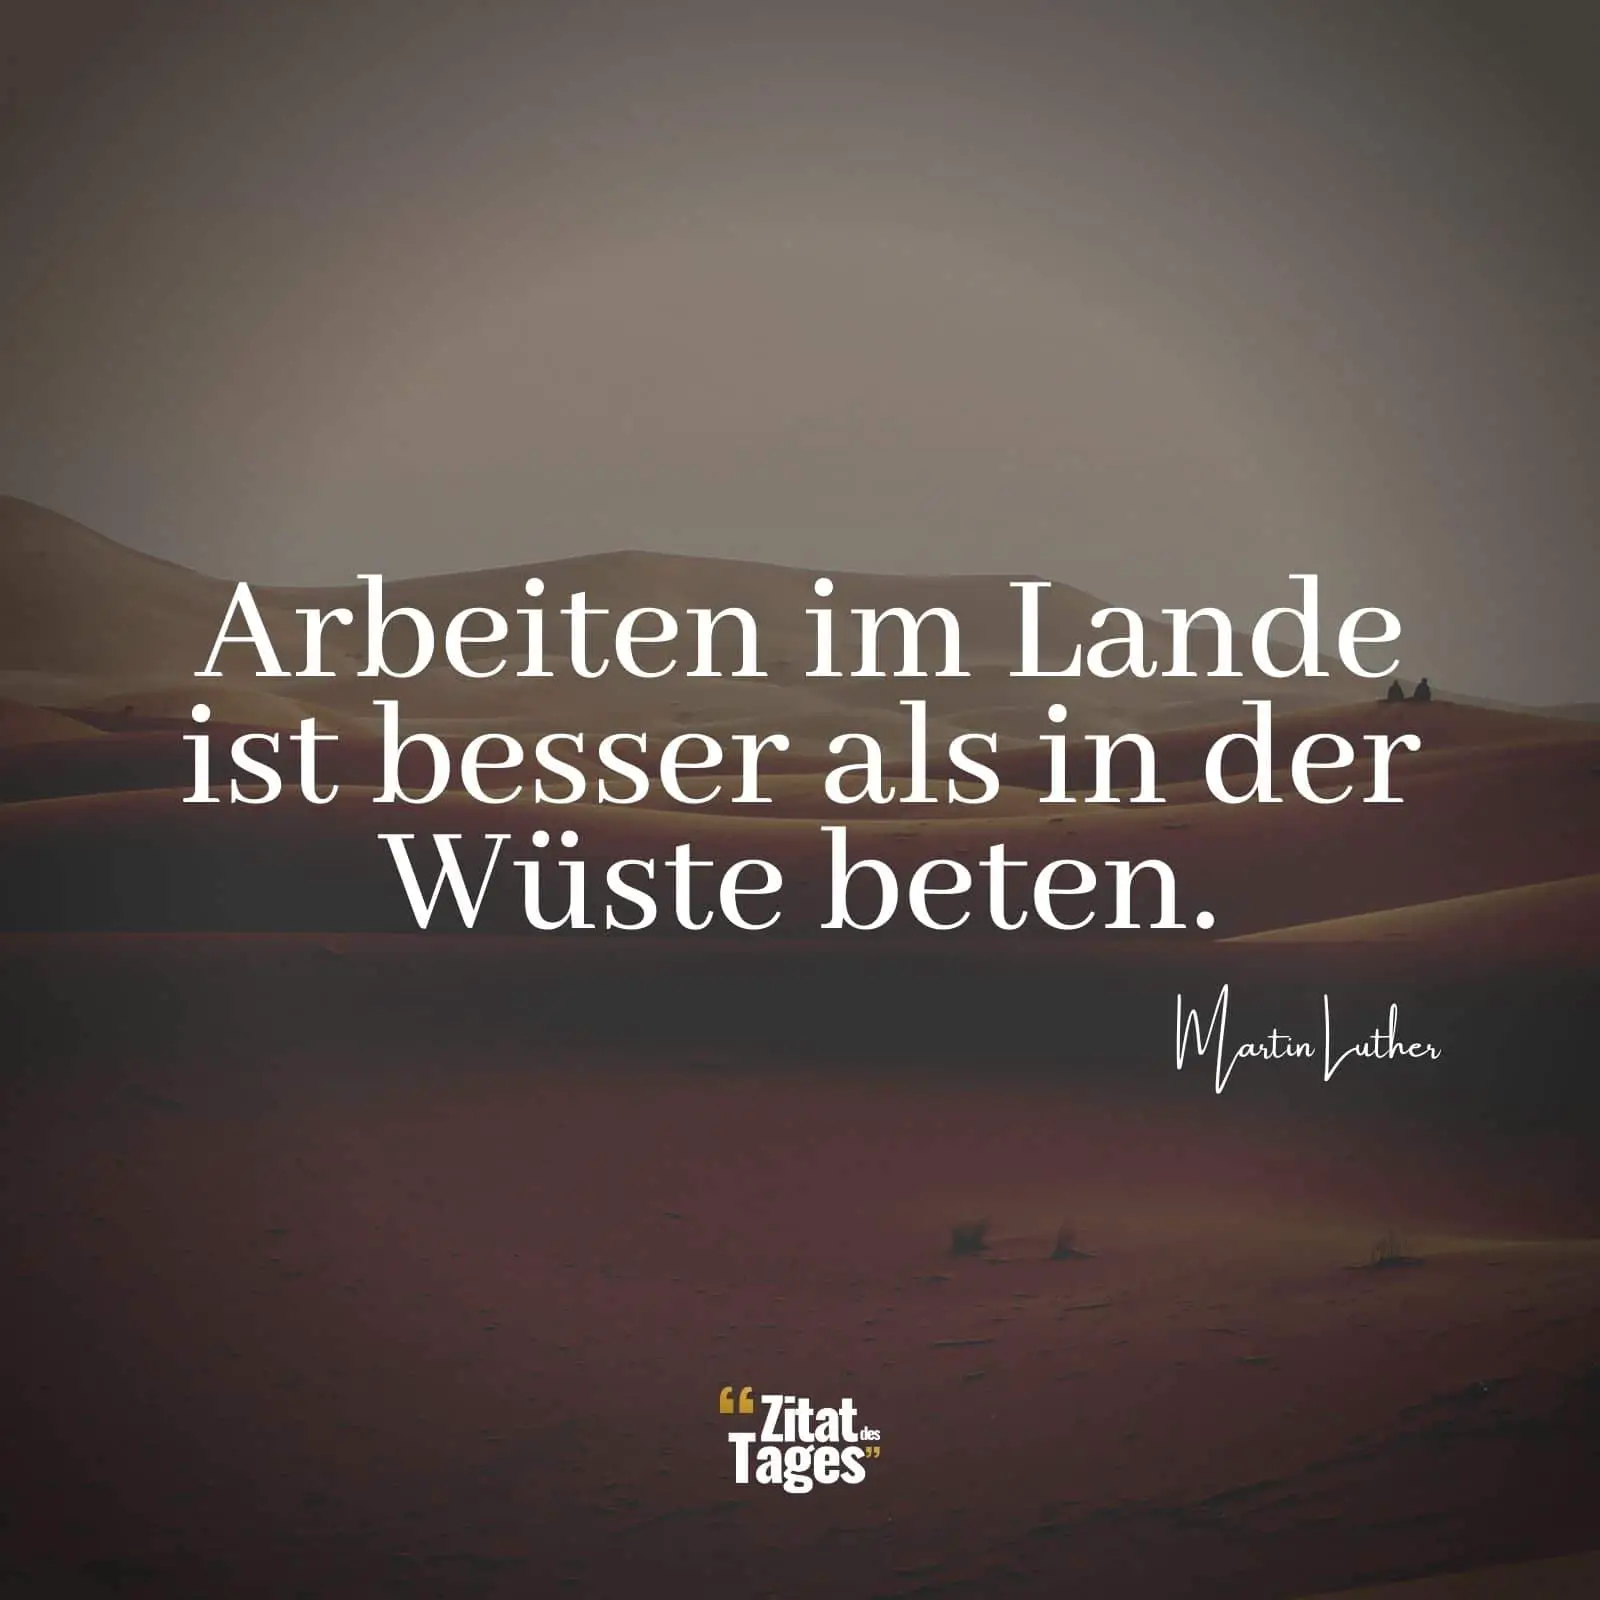 Arbeiten im Lande ist besser als in der Wüste beten. - Martin Luther